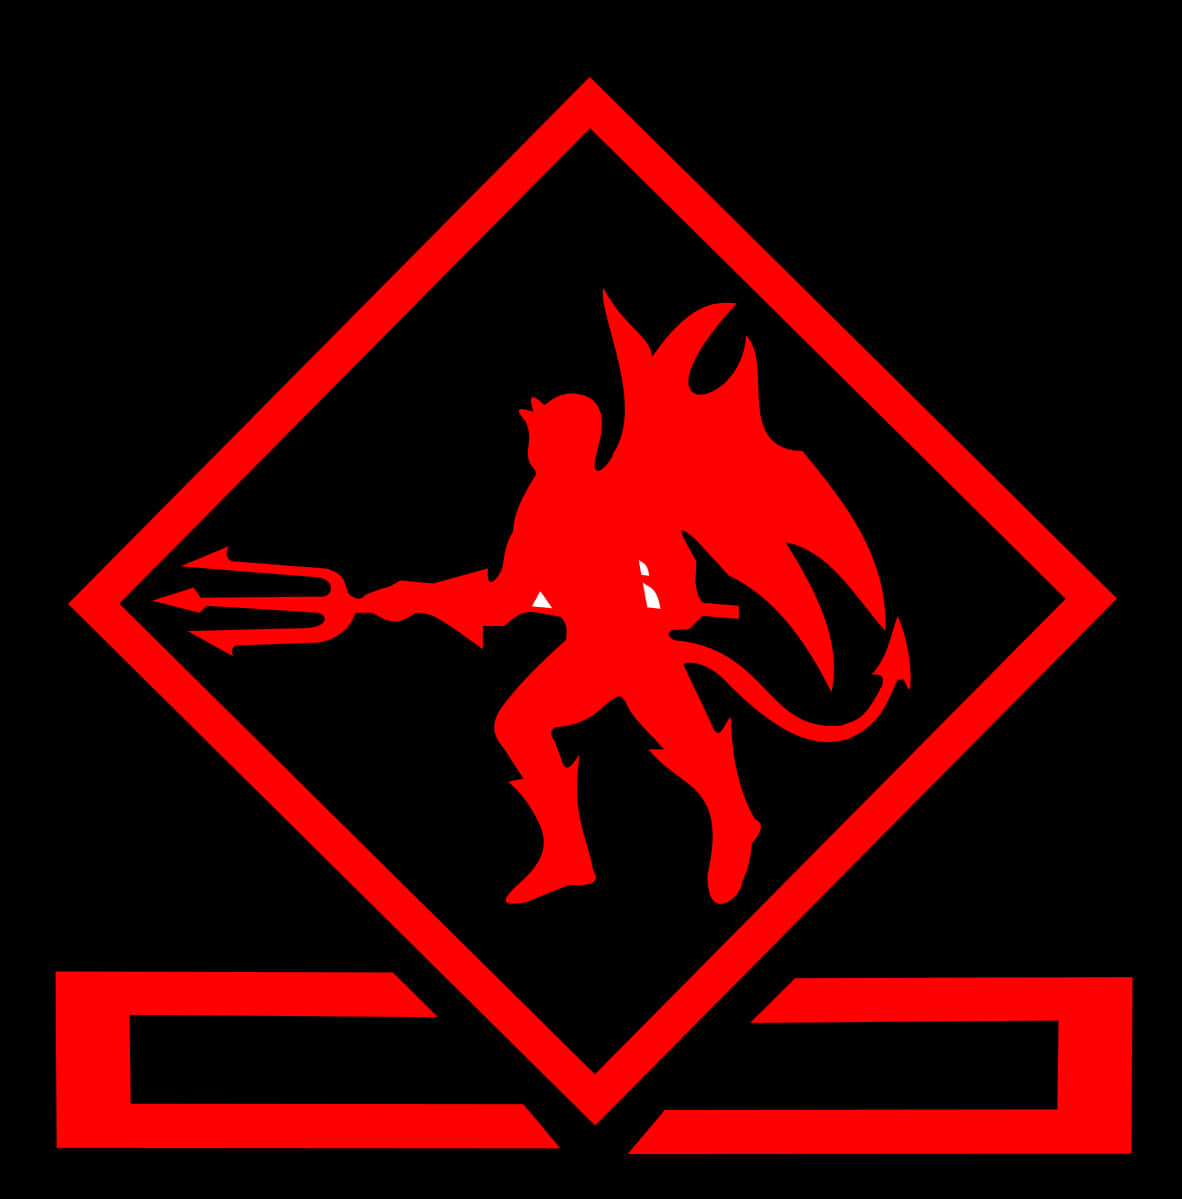 Red Devil Silhouette Graphic